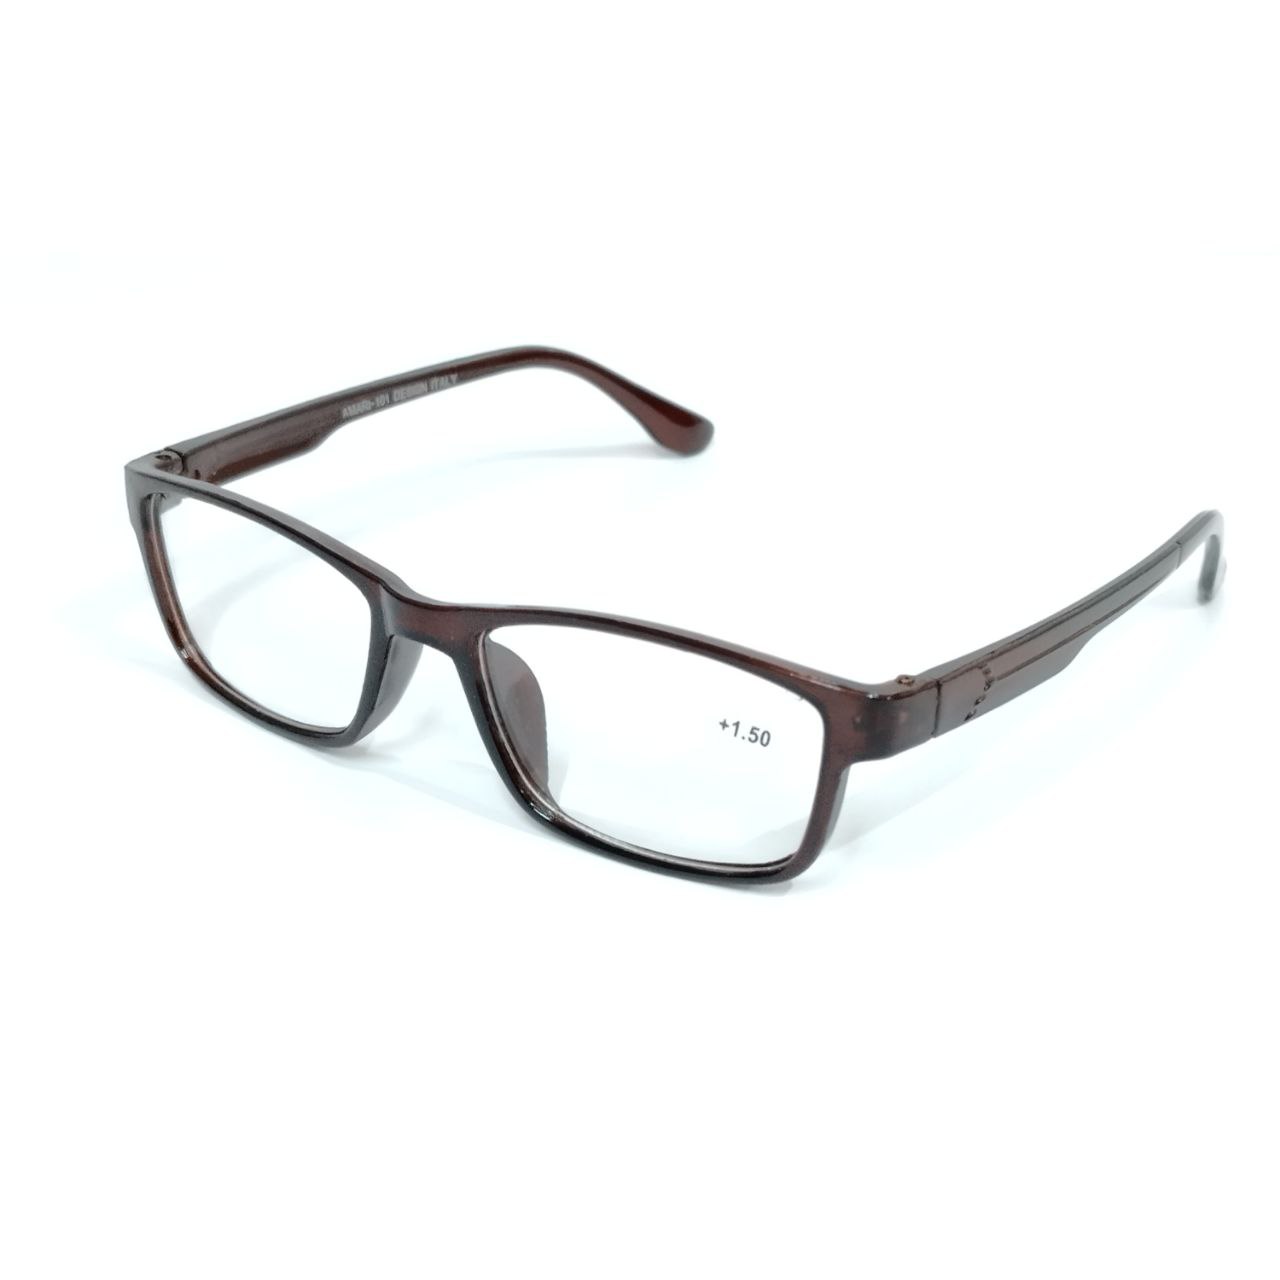 Buy Bifocal Reading Glasses for Men and Women Kryptok Lens Power